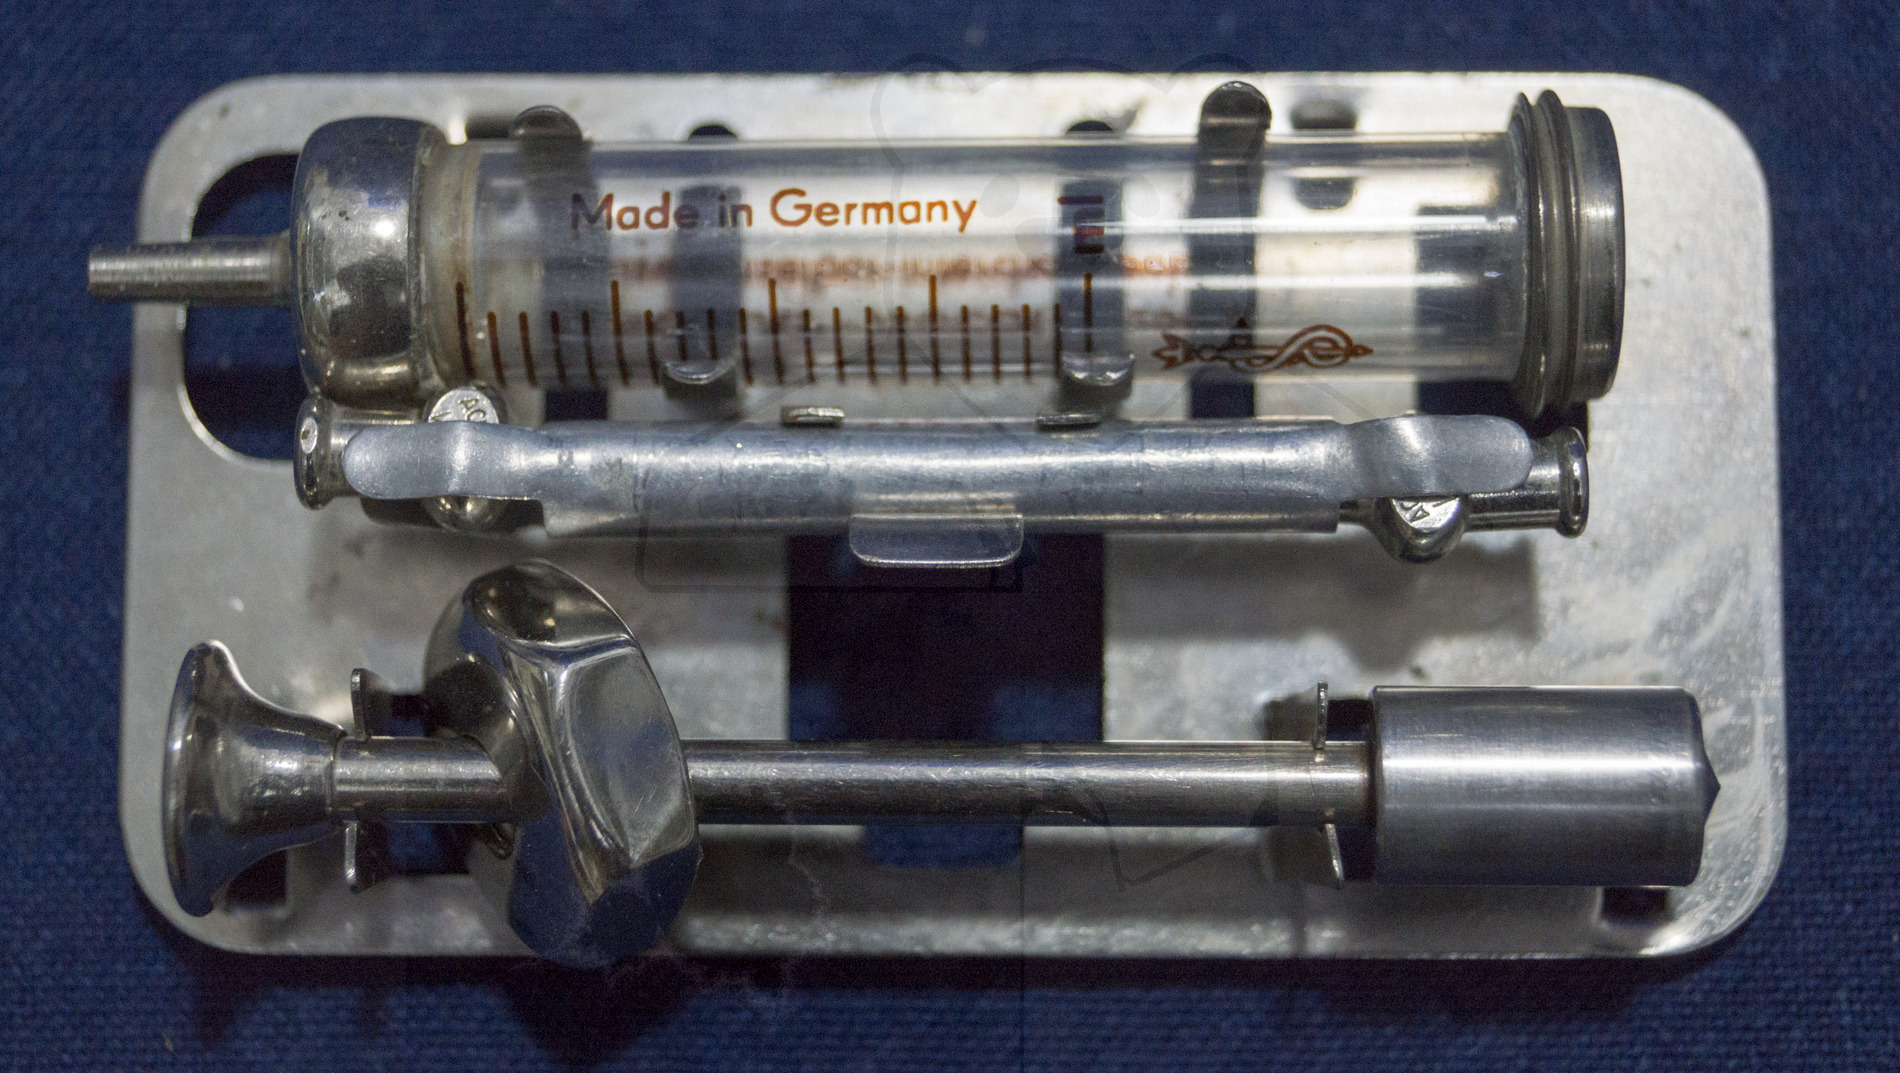 Sterilisierbare Transportbox für 2ml Glasspritzen mit Deckel, Mitte der 1960'er Jahre, Entnommener Träger mit Spritze, Kolben und zwei Kanülen